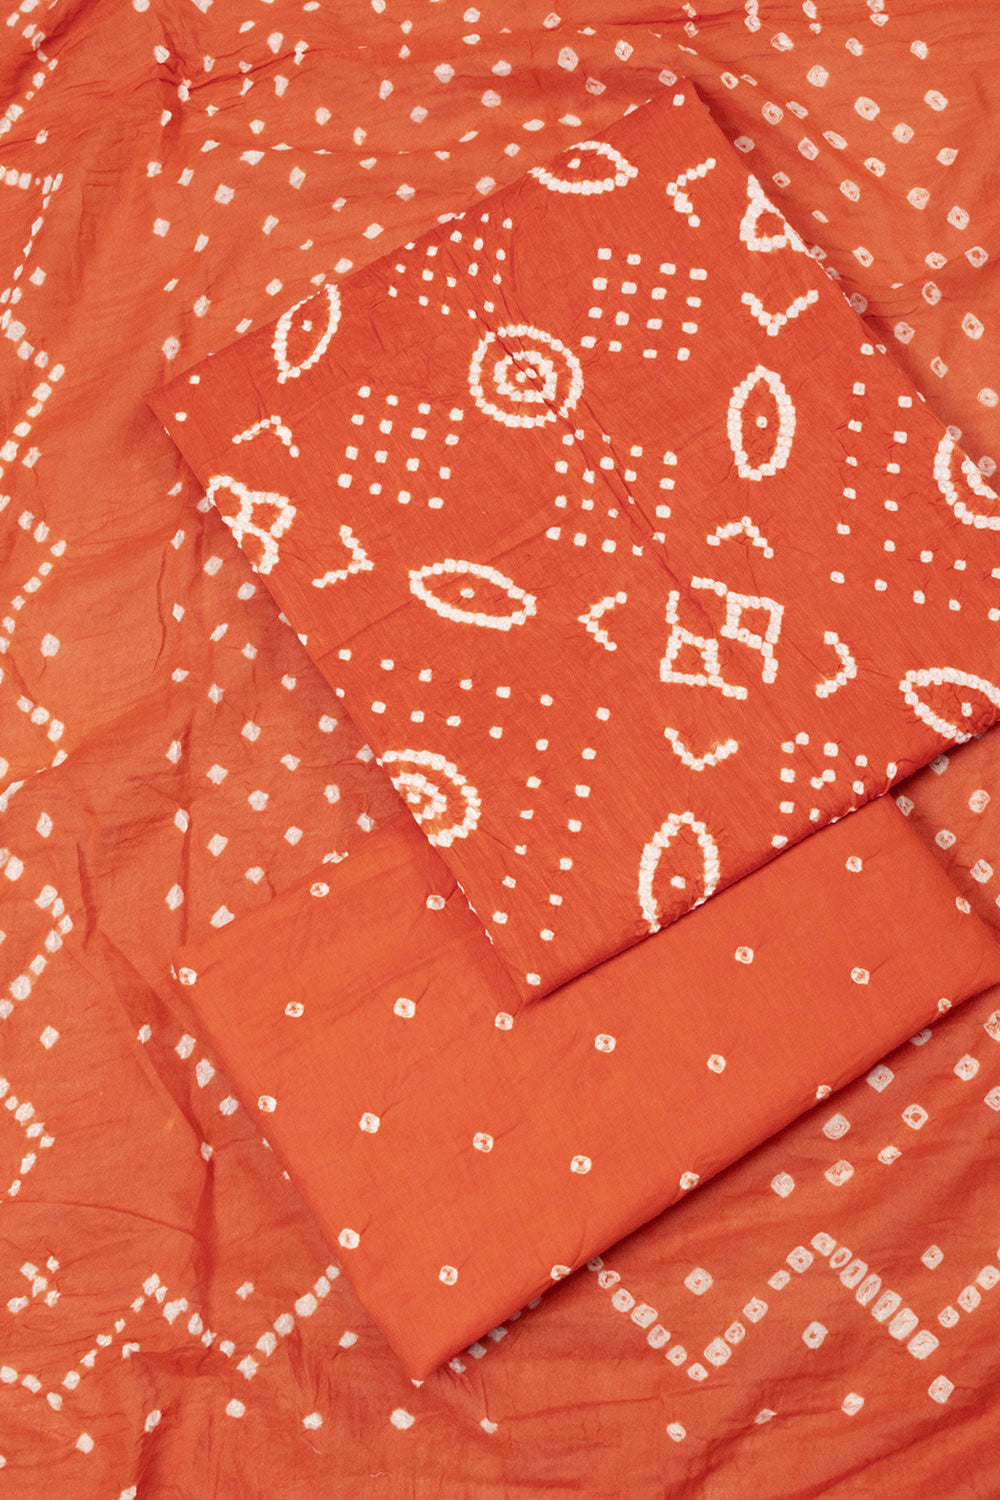 Orange Bandhani Cotton 3-Piece Salwar Suit Material - Avishya